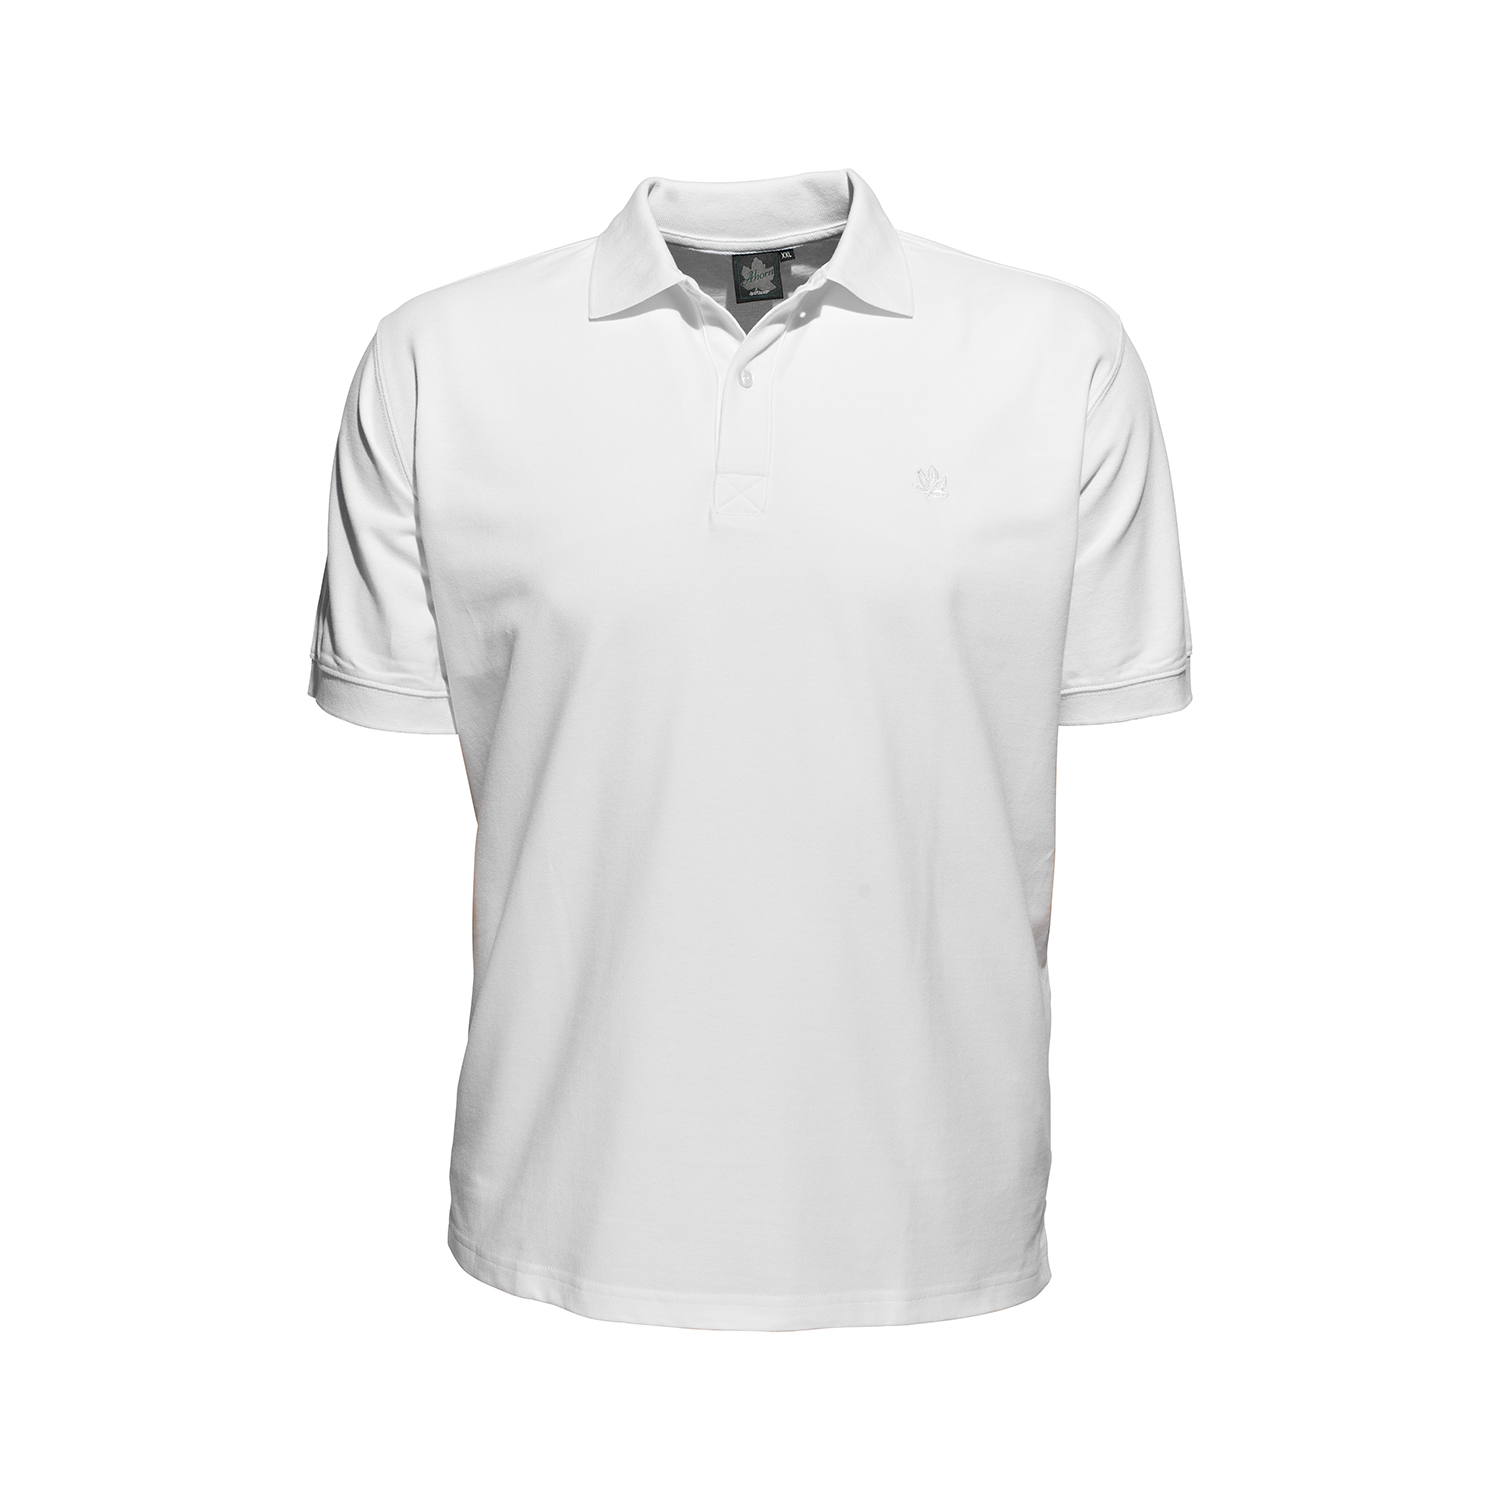 Polo-shirt en blanc à manches courtes by Ahorn Sportswear en grandes tailles 2XL - 10XL